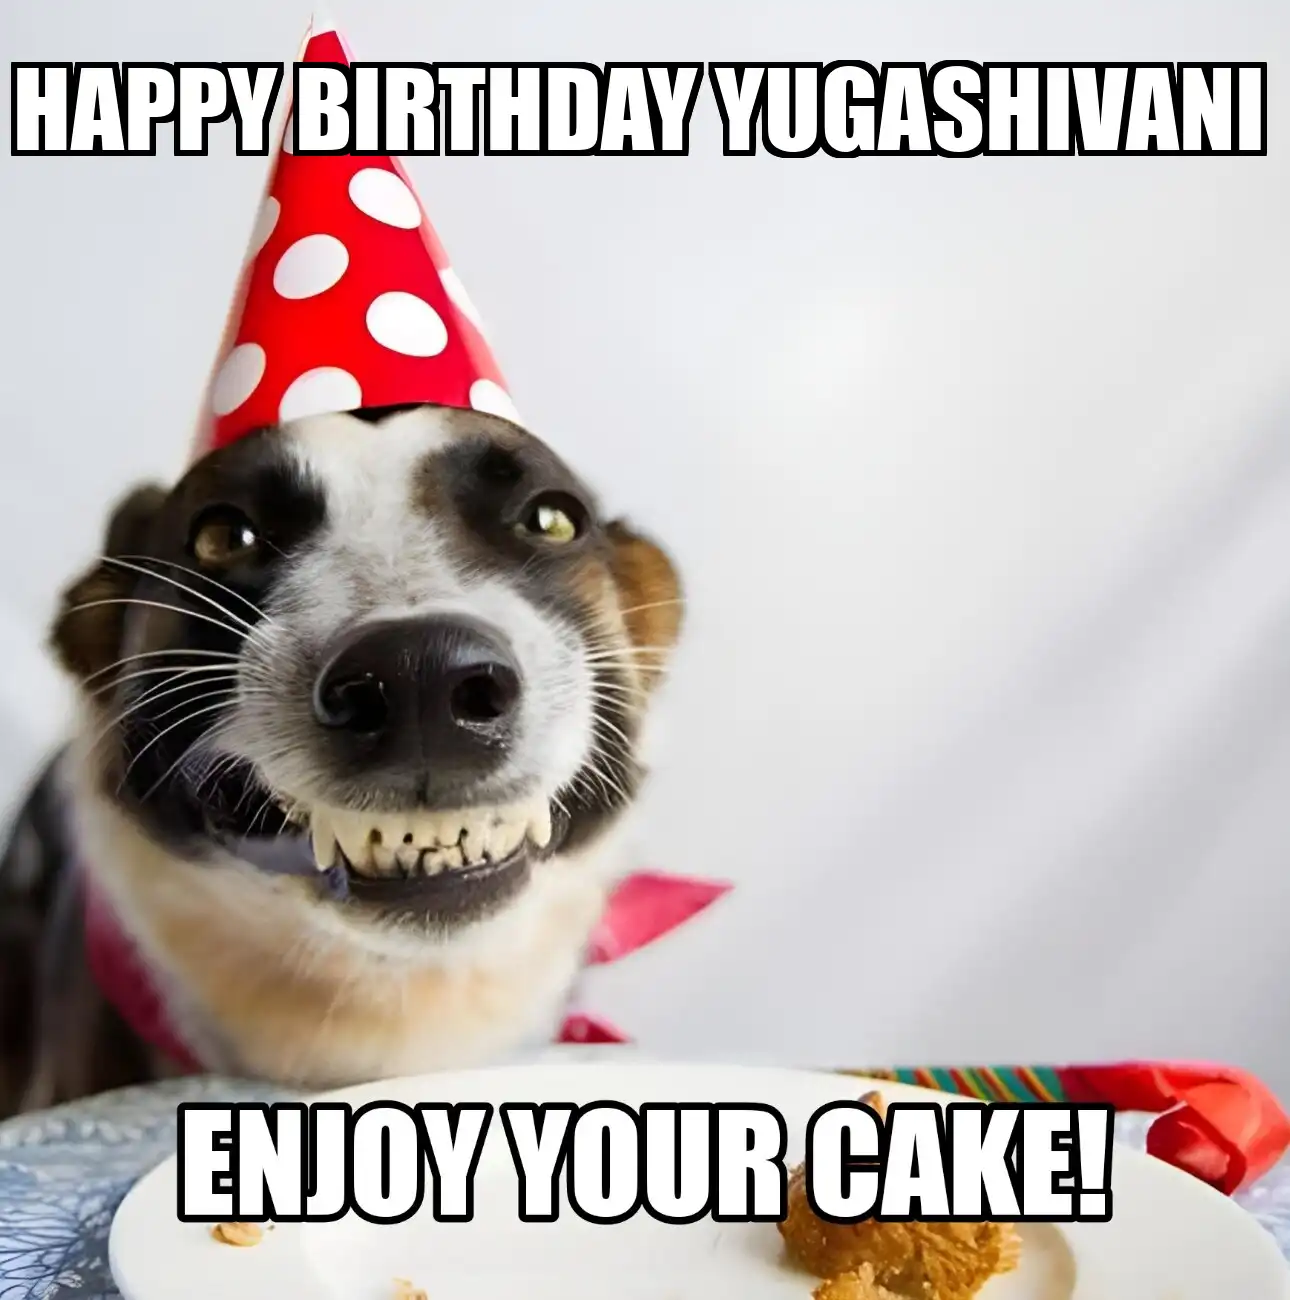 Happy Birthday Yugashivani Enjoy Your Cake Dog Meme